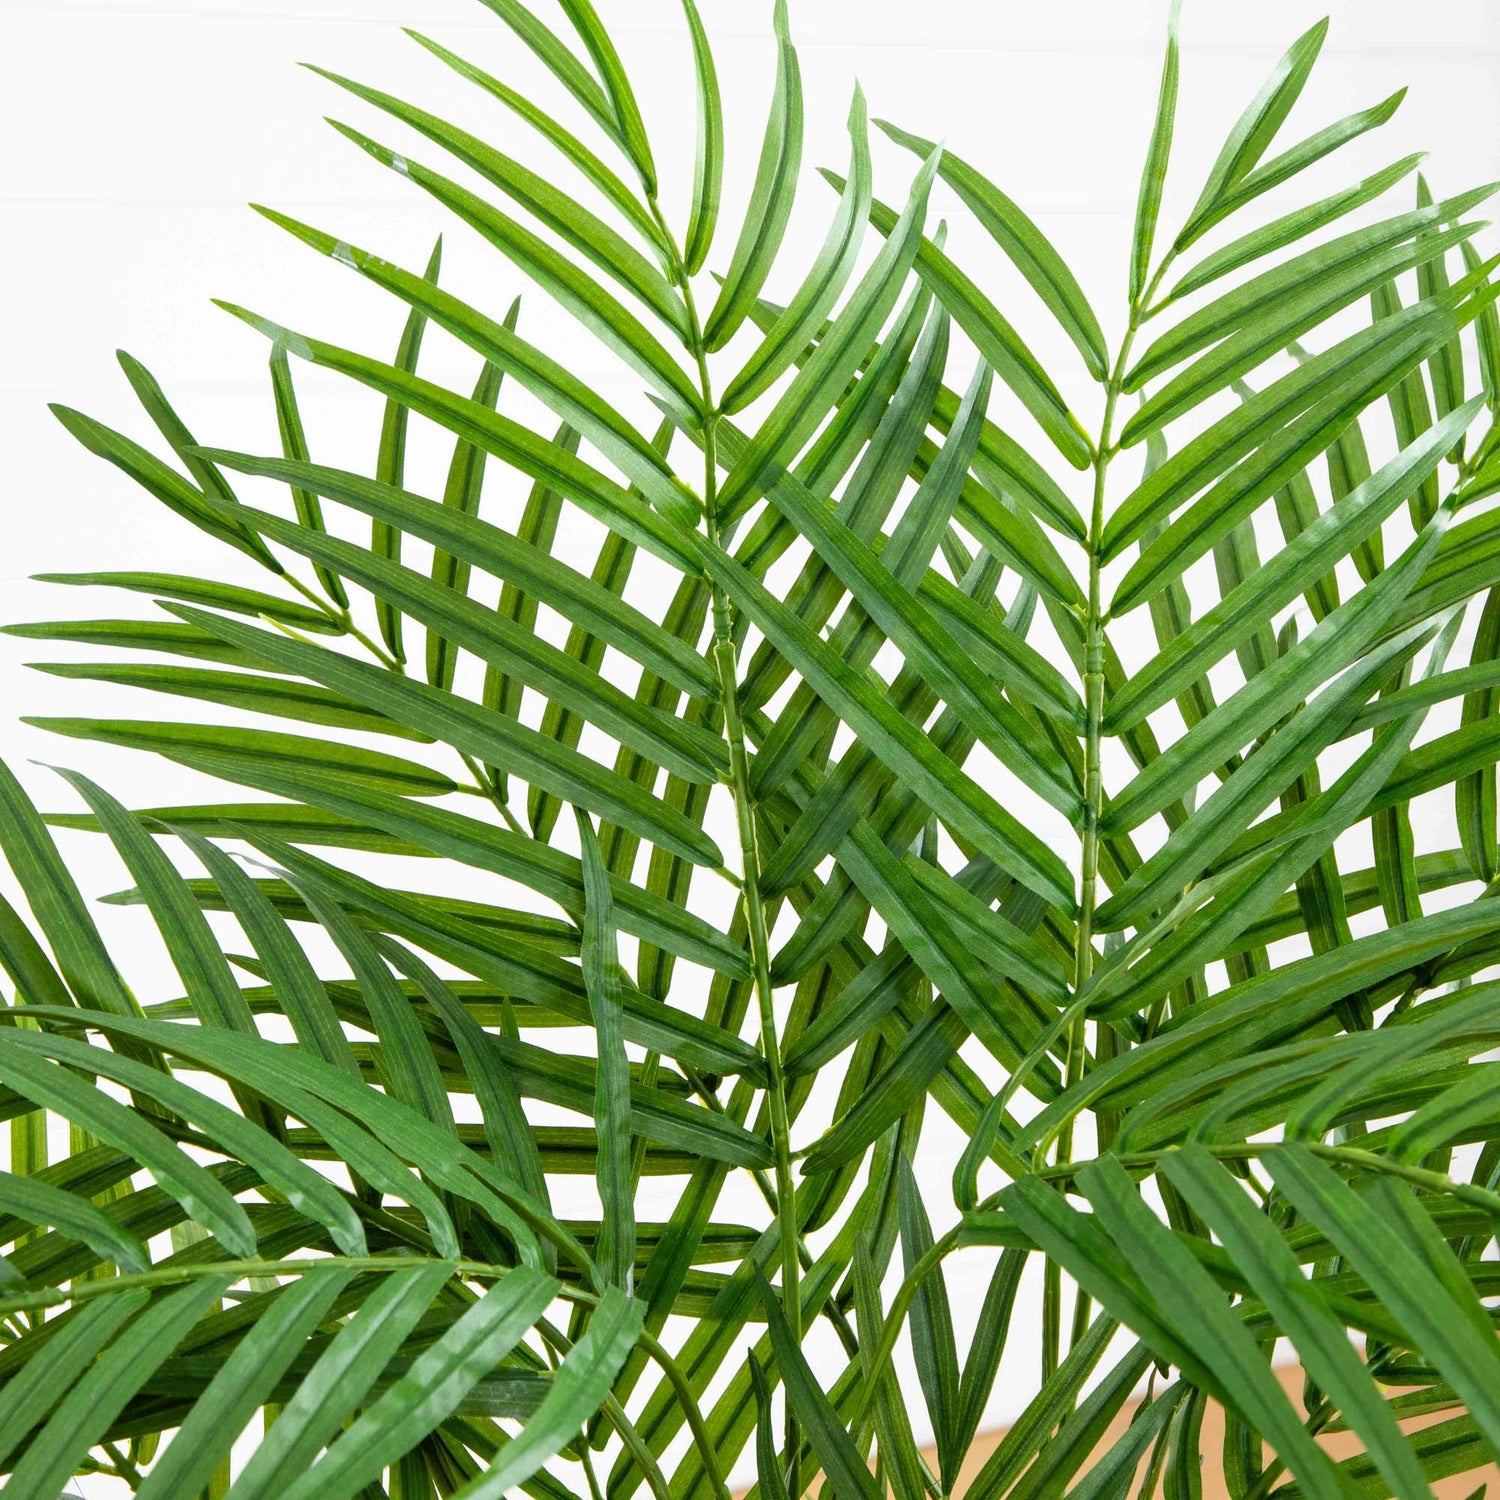 3' Areca Silk Palm Tree